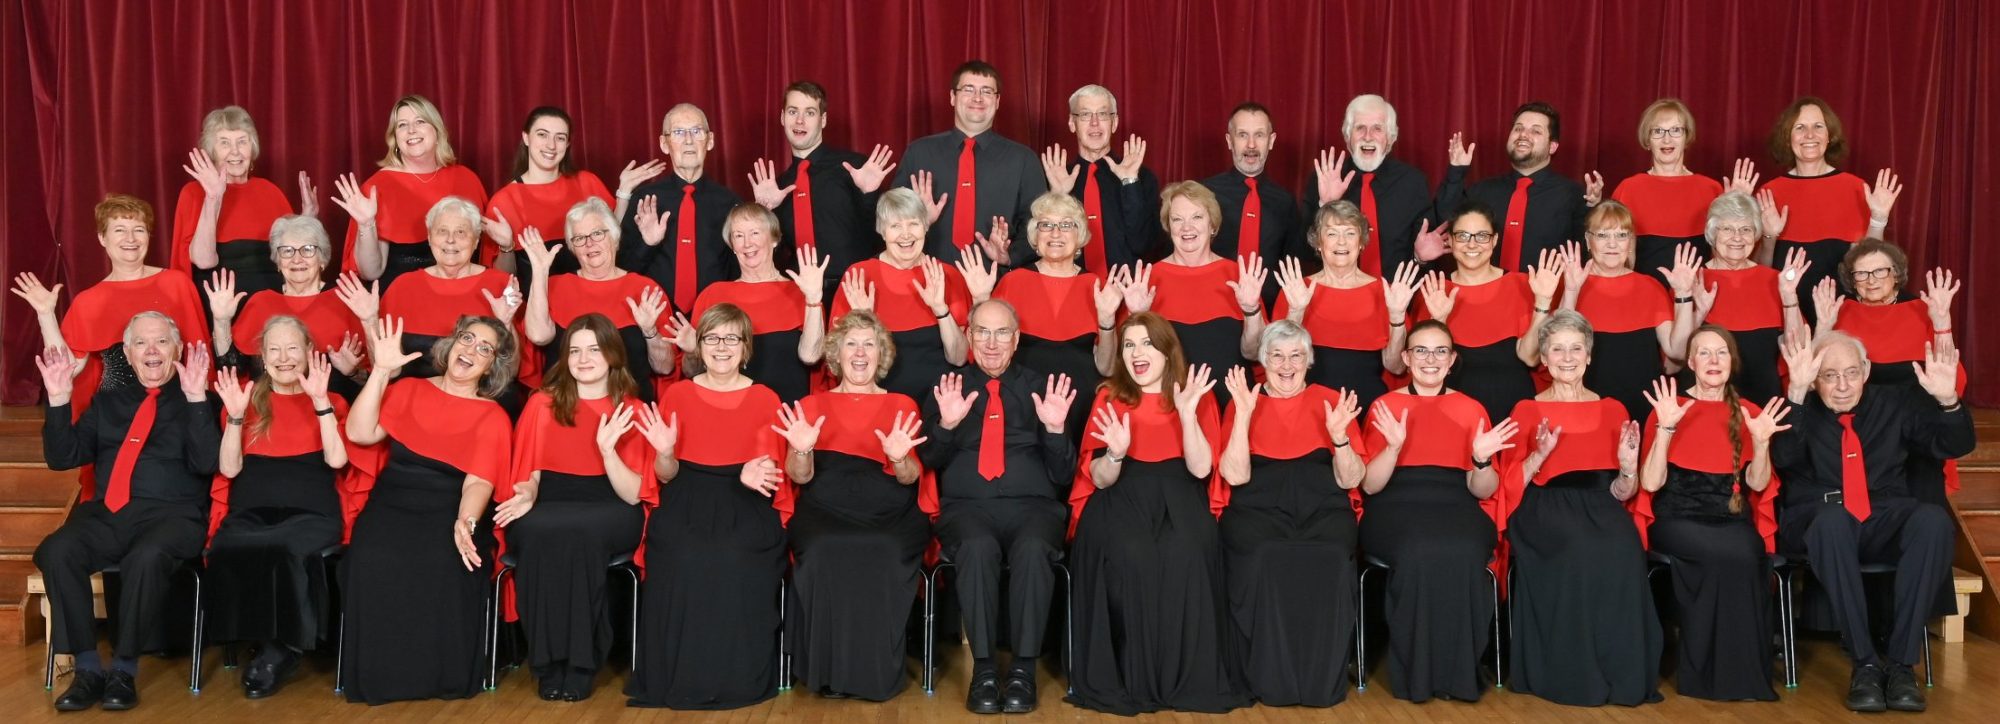 Steventon Choral Society